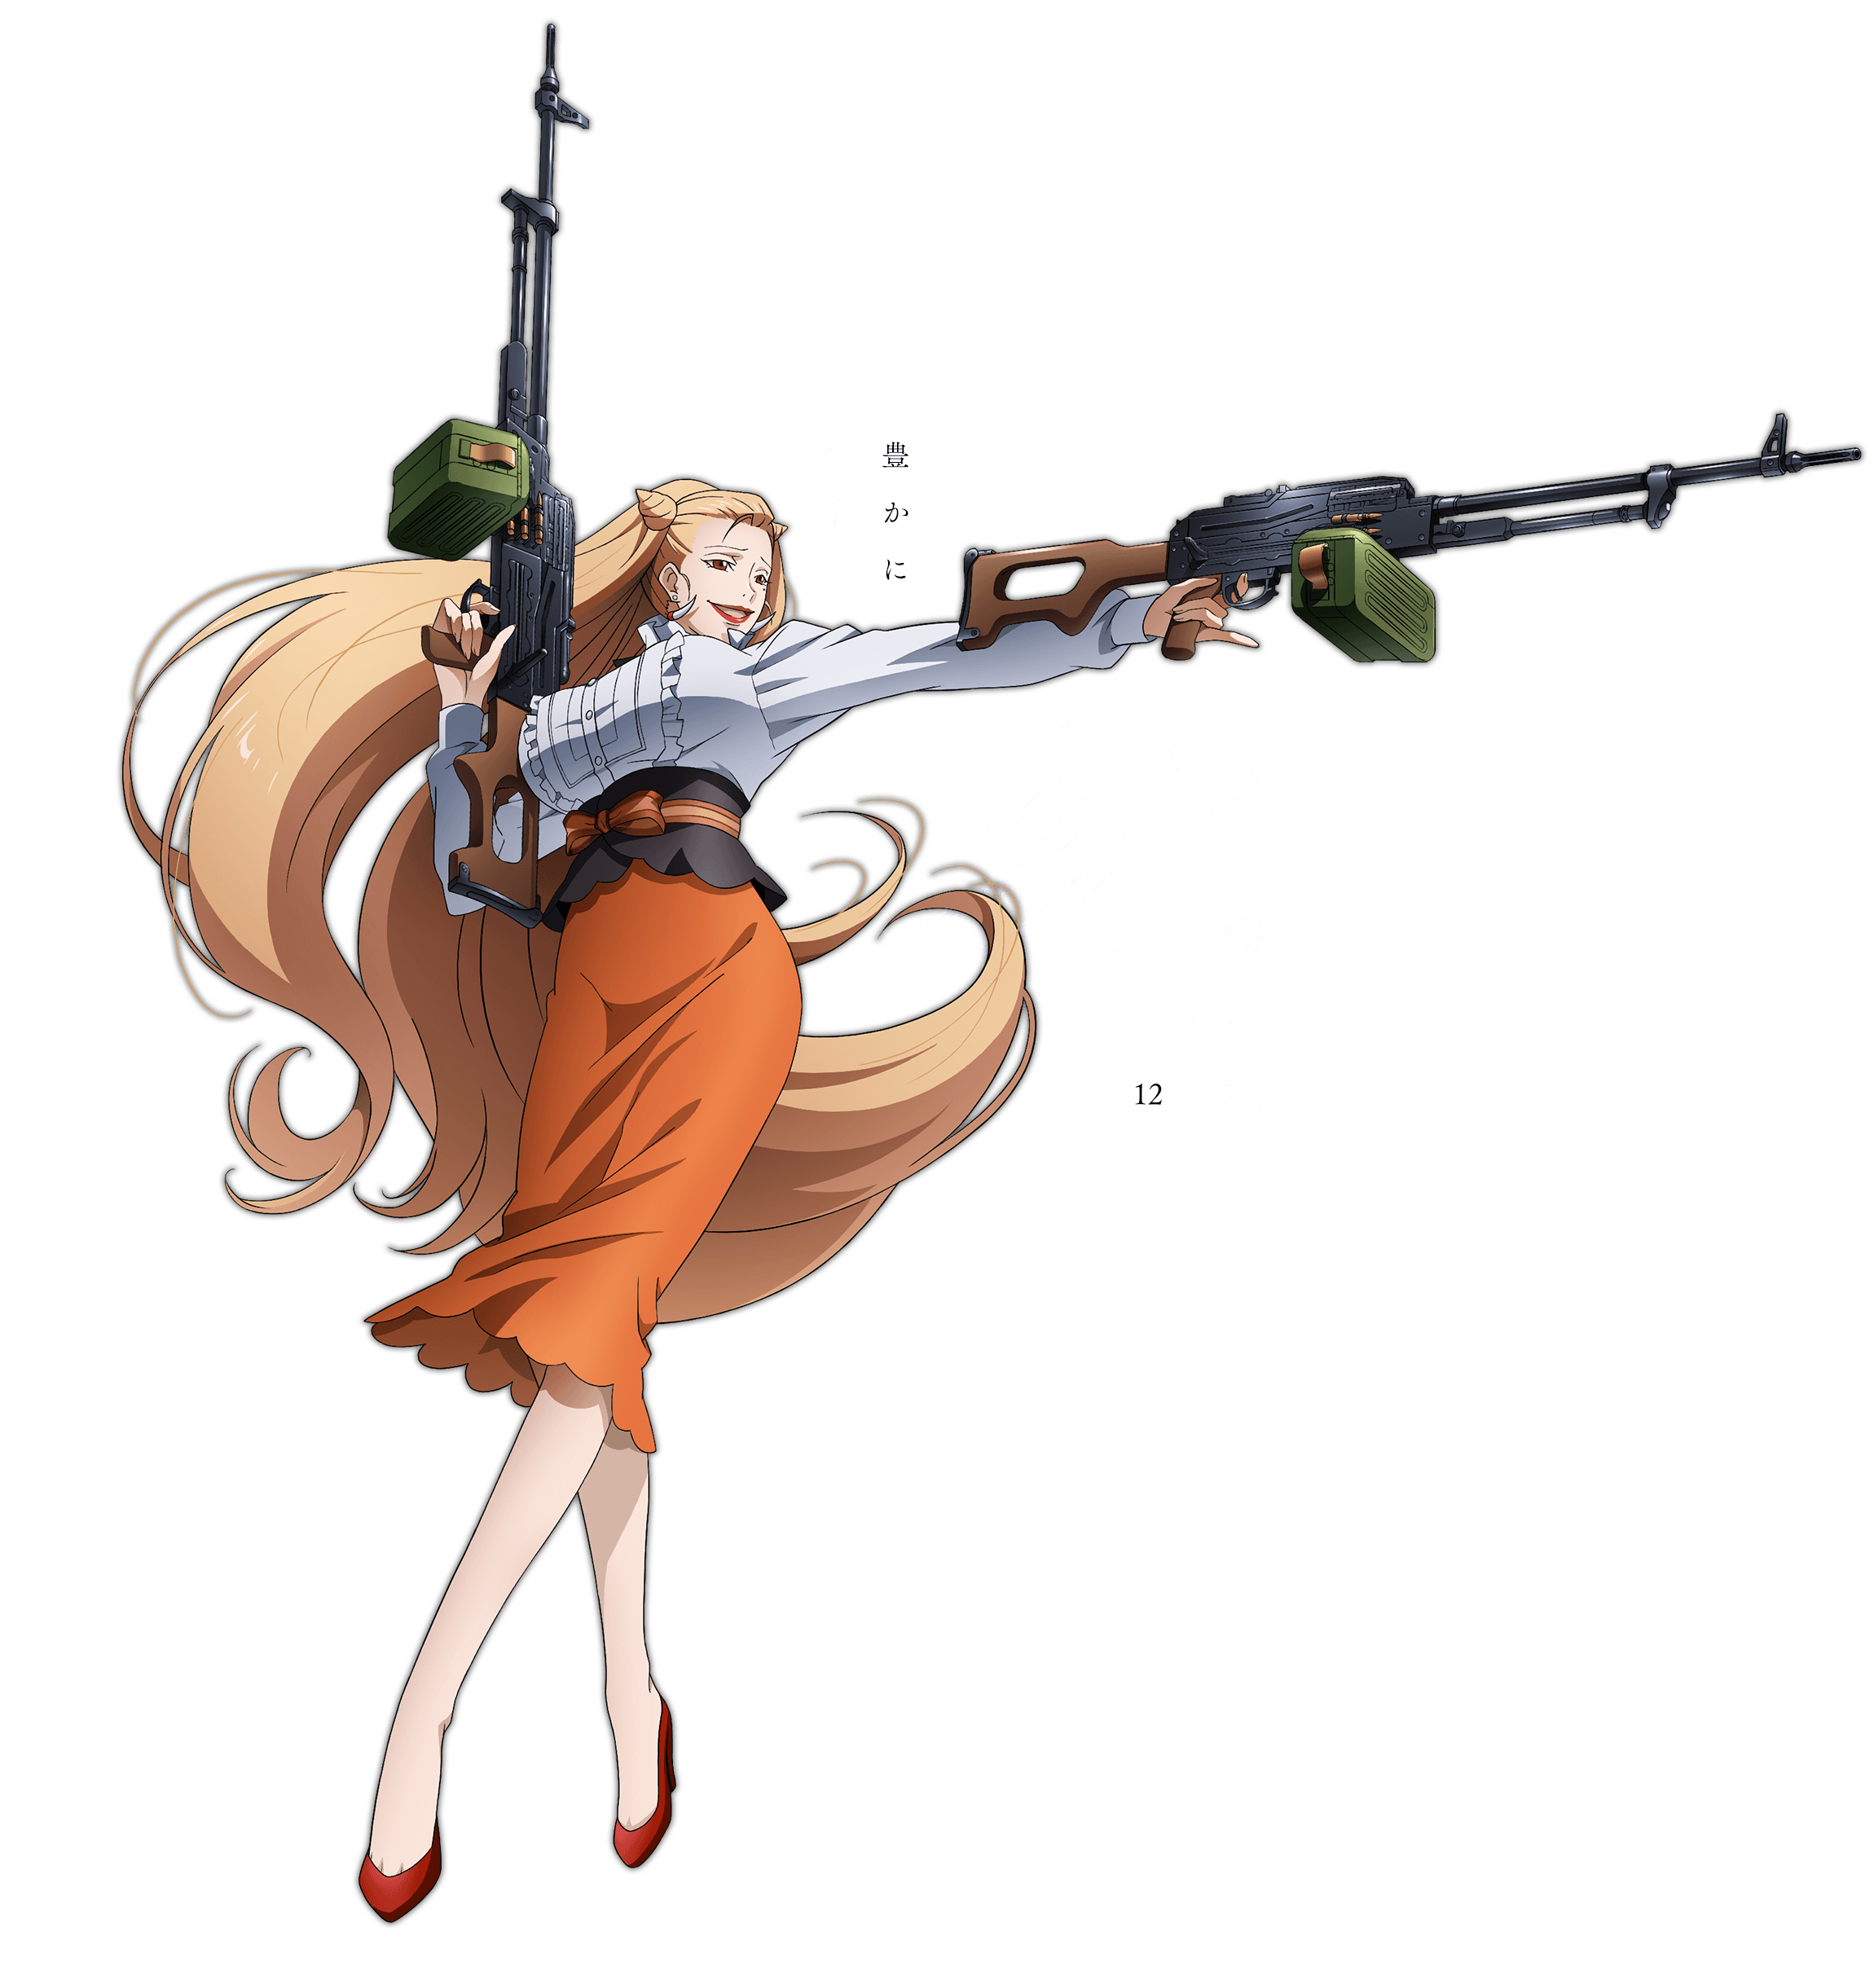 Juuni Taisen (Juni Taisen: Zodiac War) Anime Image Board